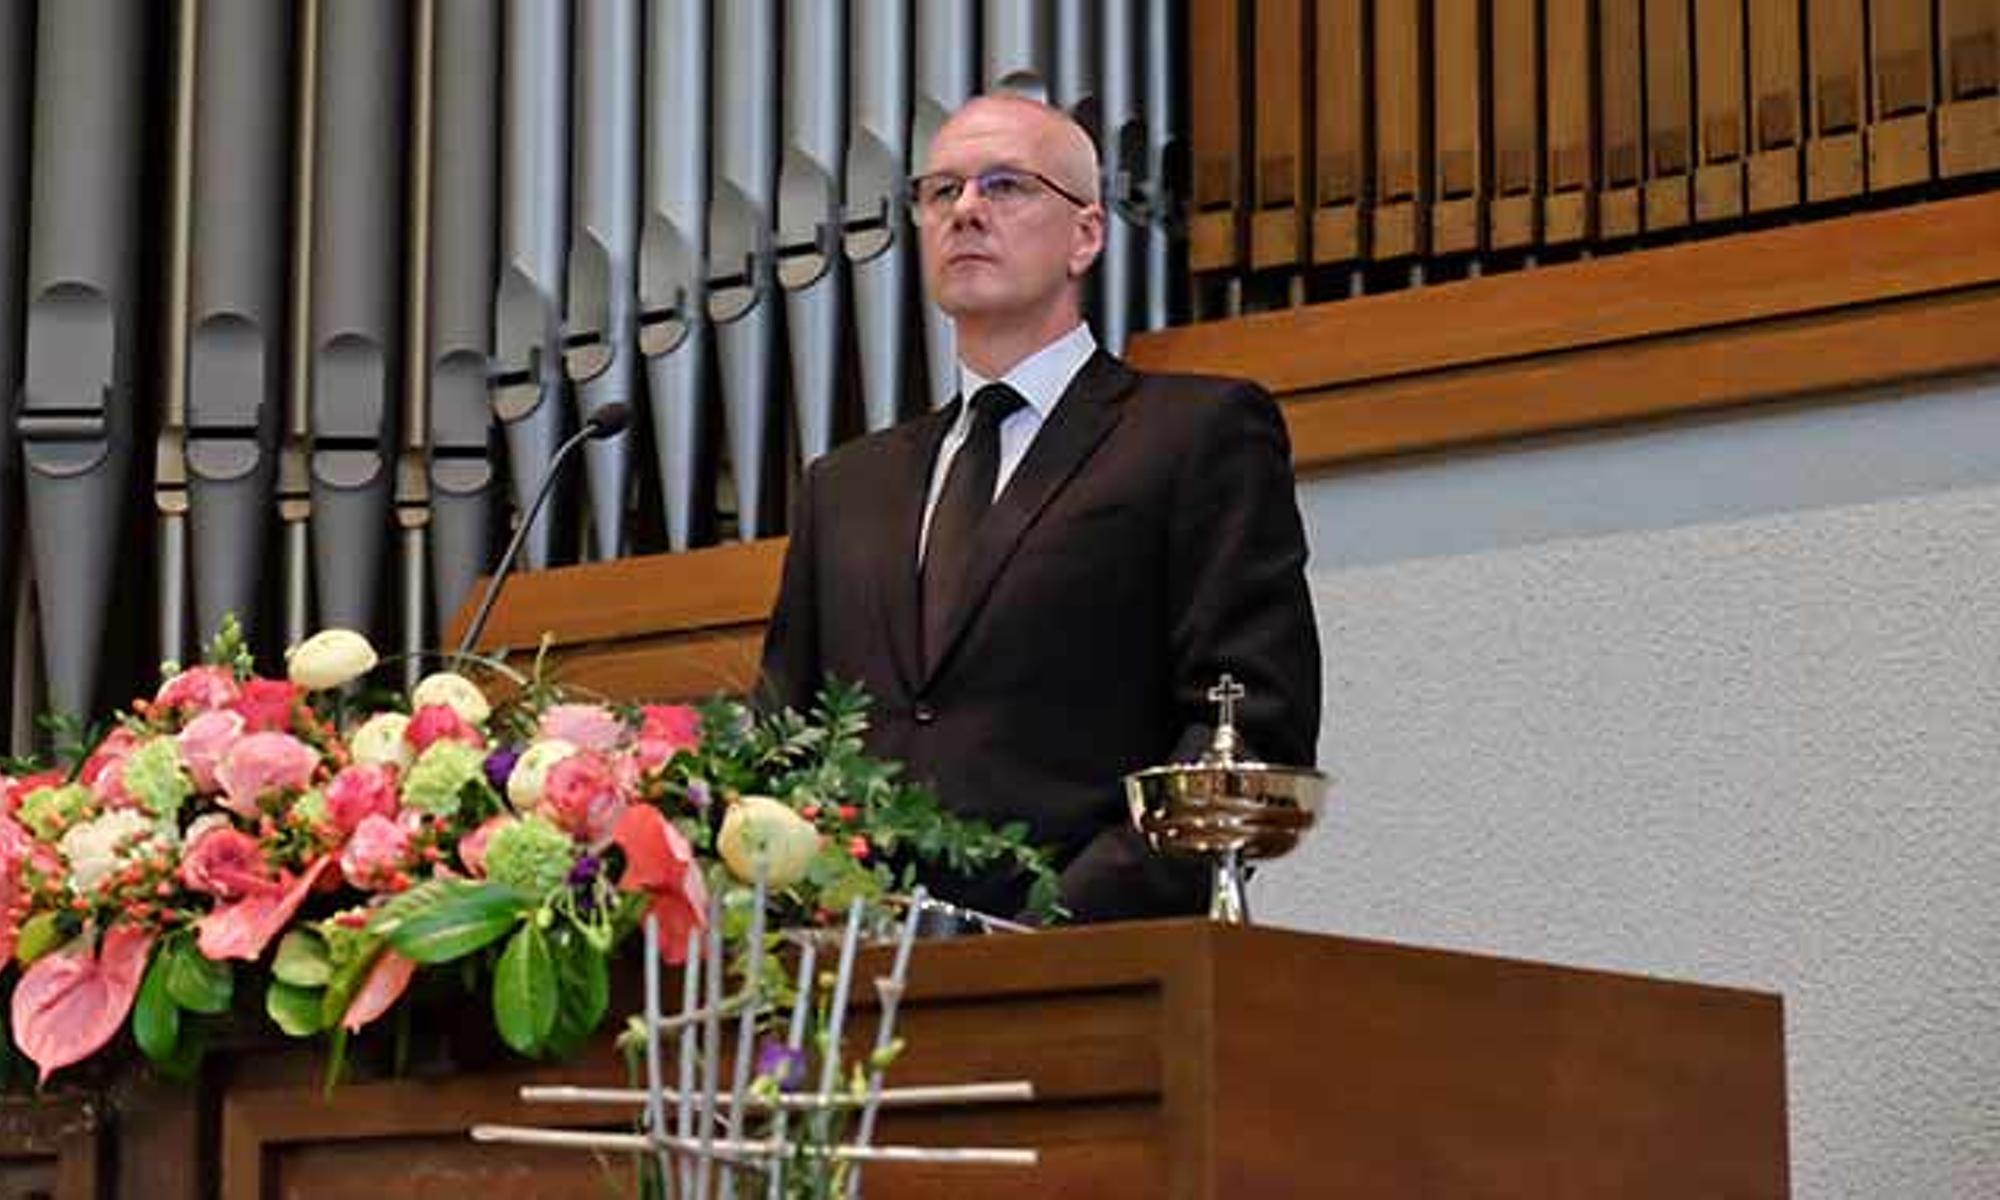 Bezirksapostel Michael Ehrich führte den Gottesdienst durch